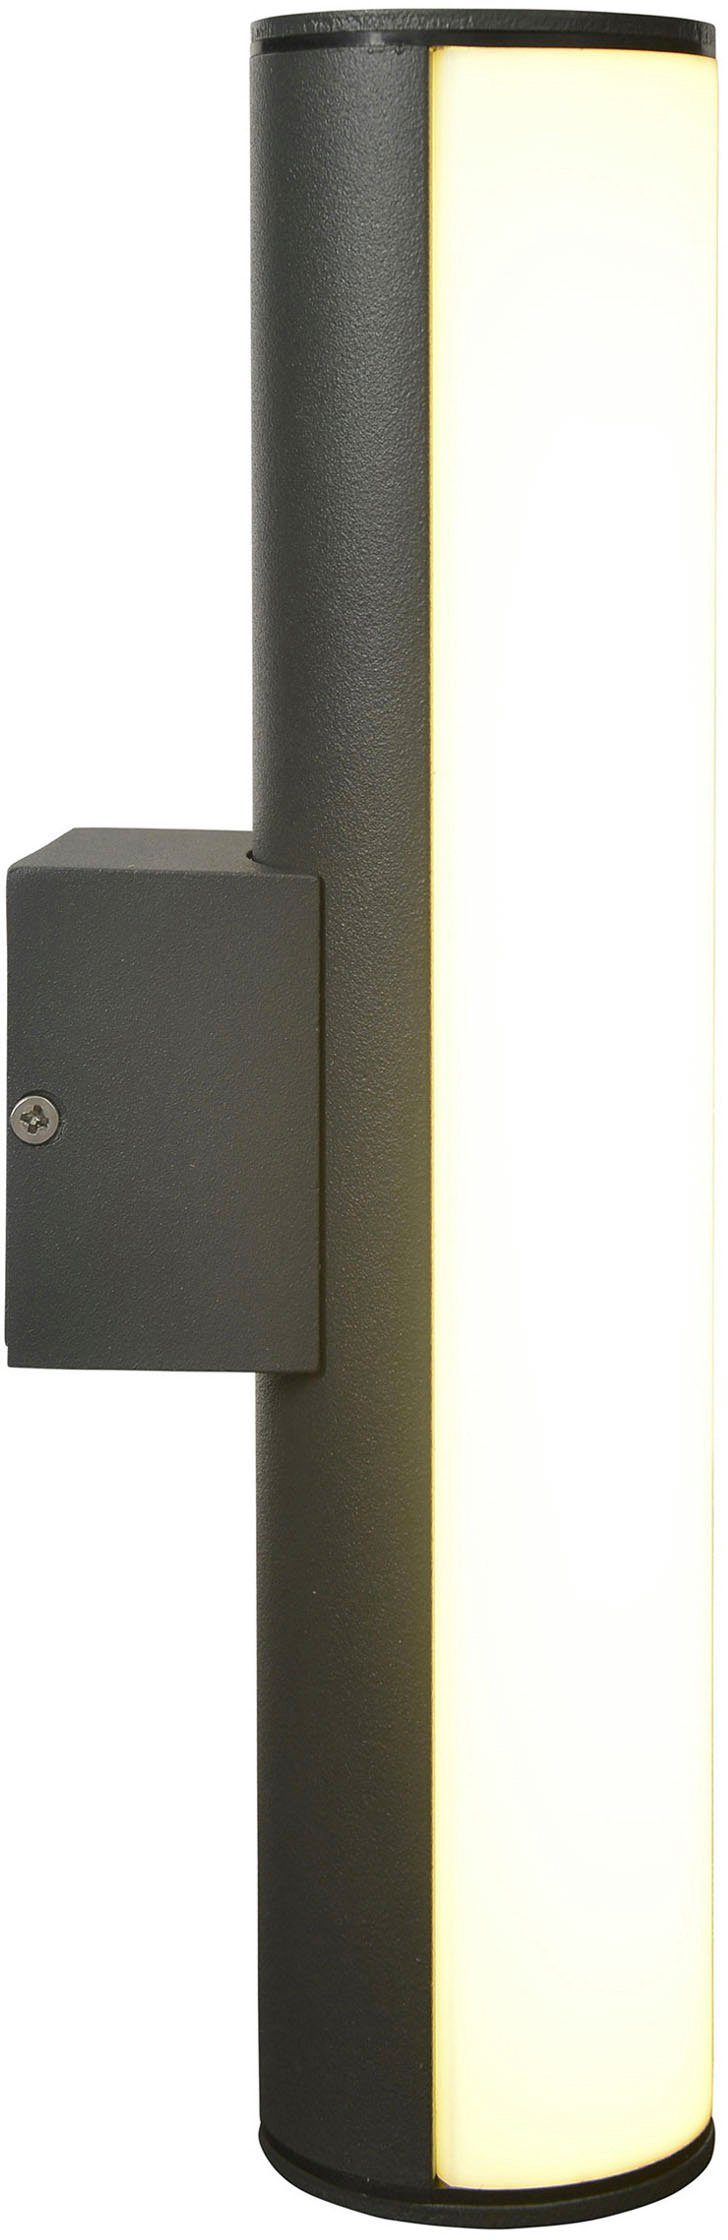 näve LED Außen-Wandleuchte Flair, Licht Länge IP54 warmweißes 30cm dunkelgrau Warmweiß, Aluminium